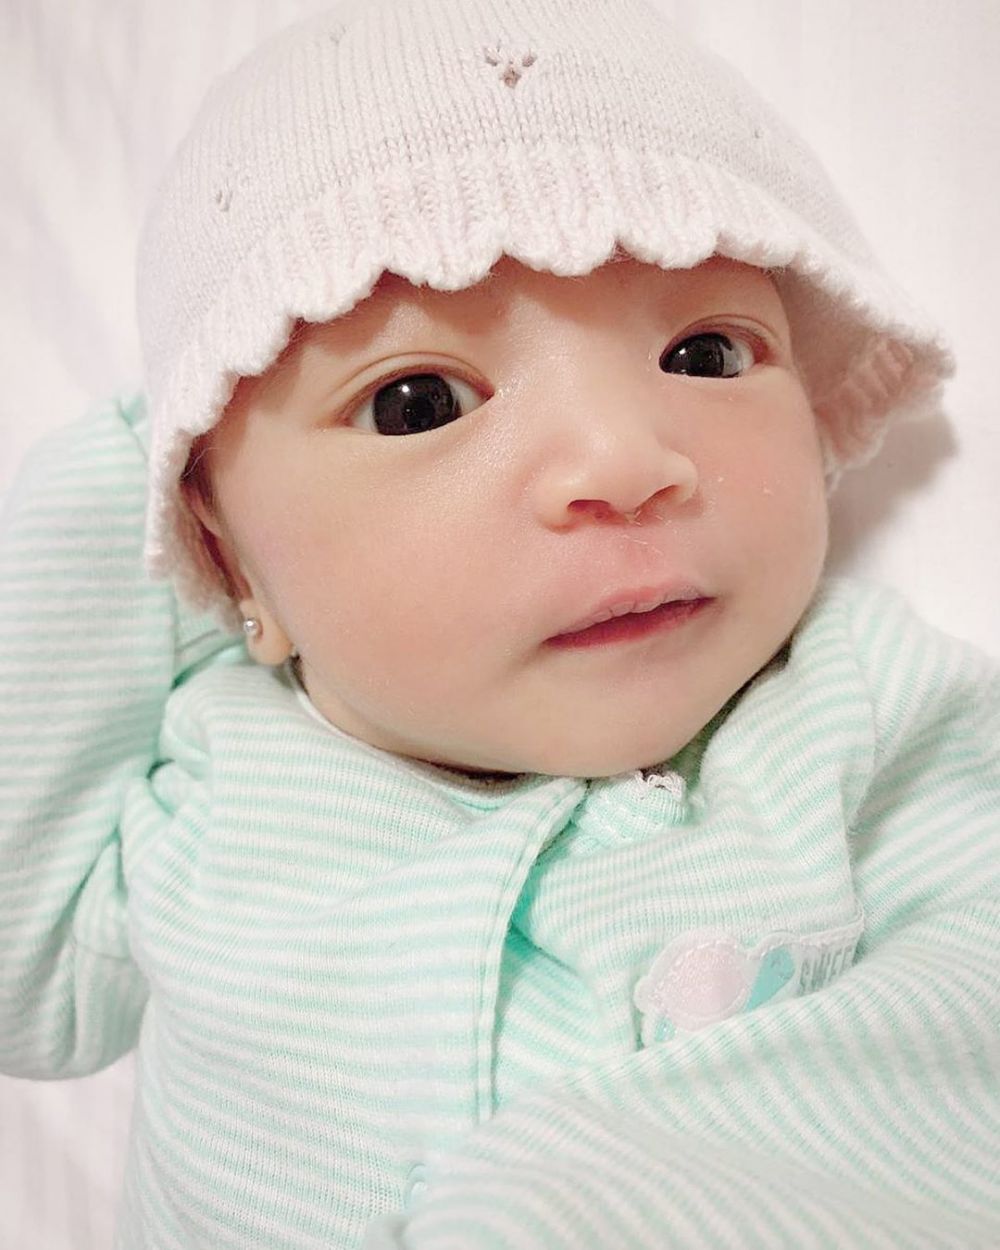 Ruben unggah foto terbaru putri kedua, mata Thania curi perhatian